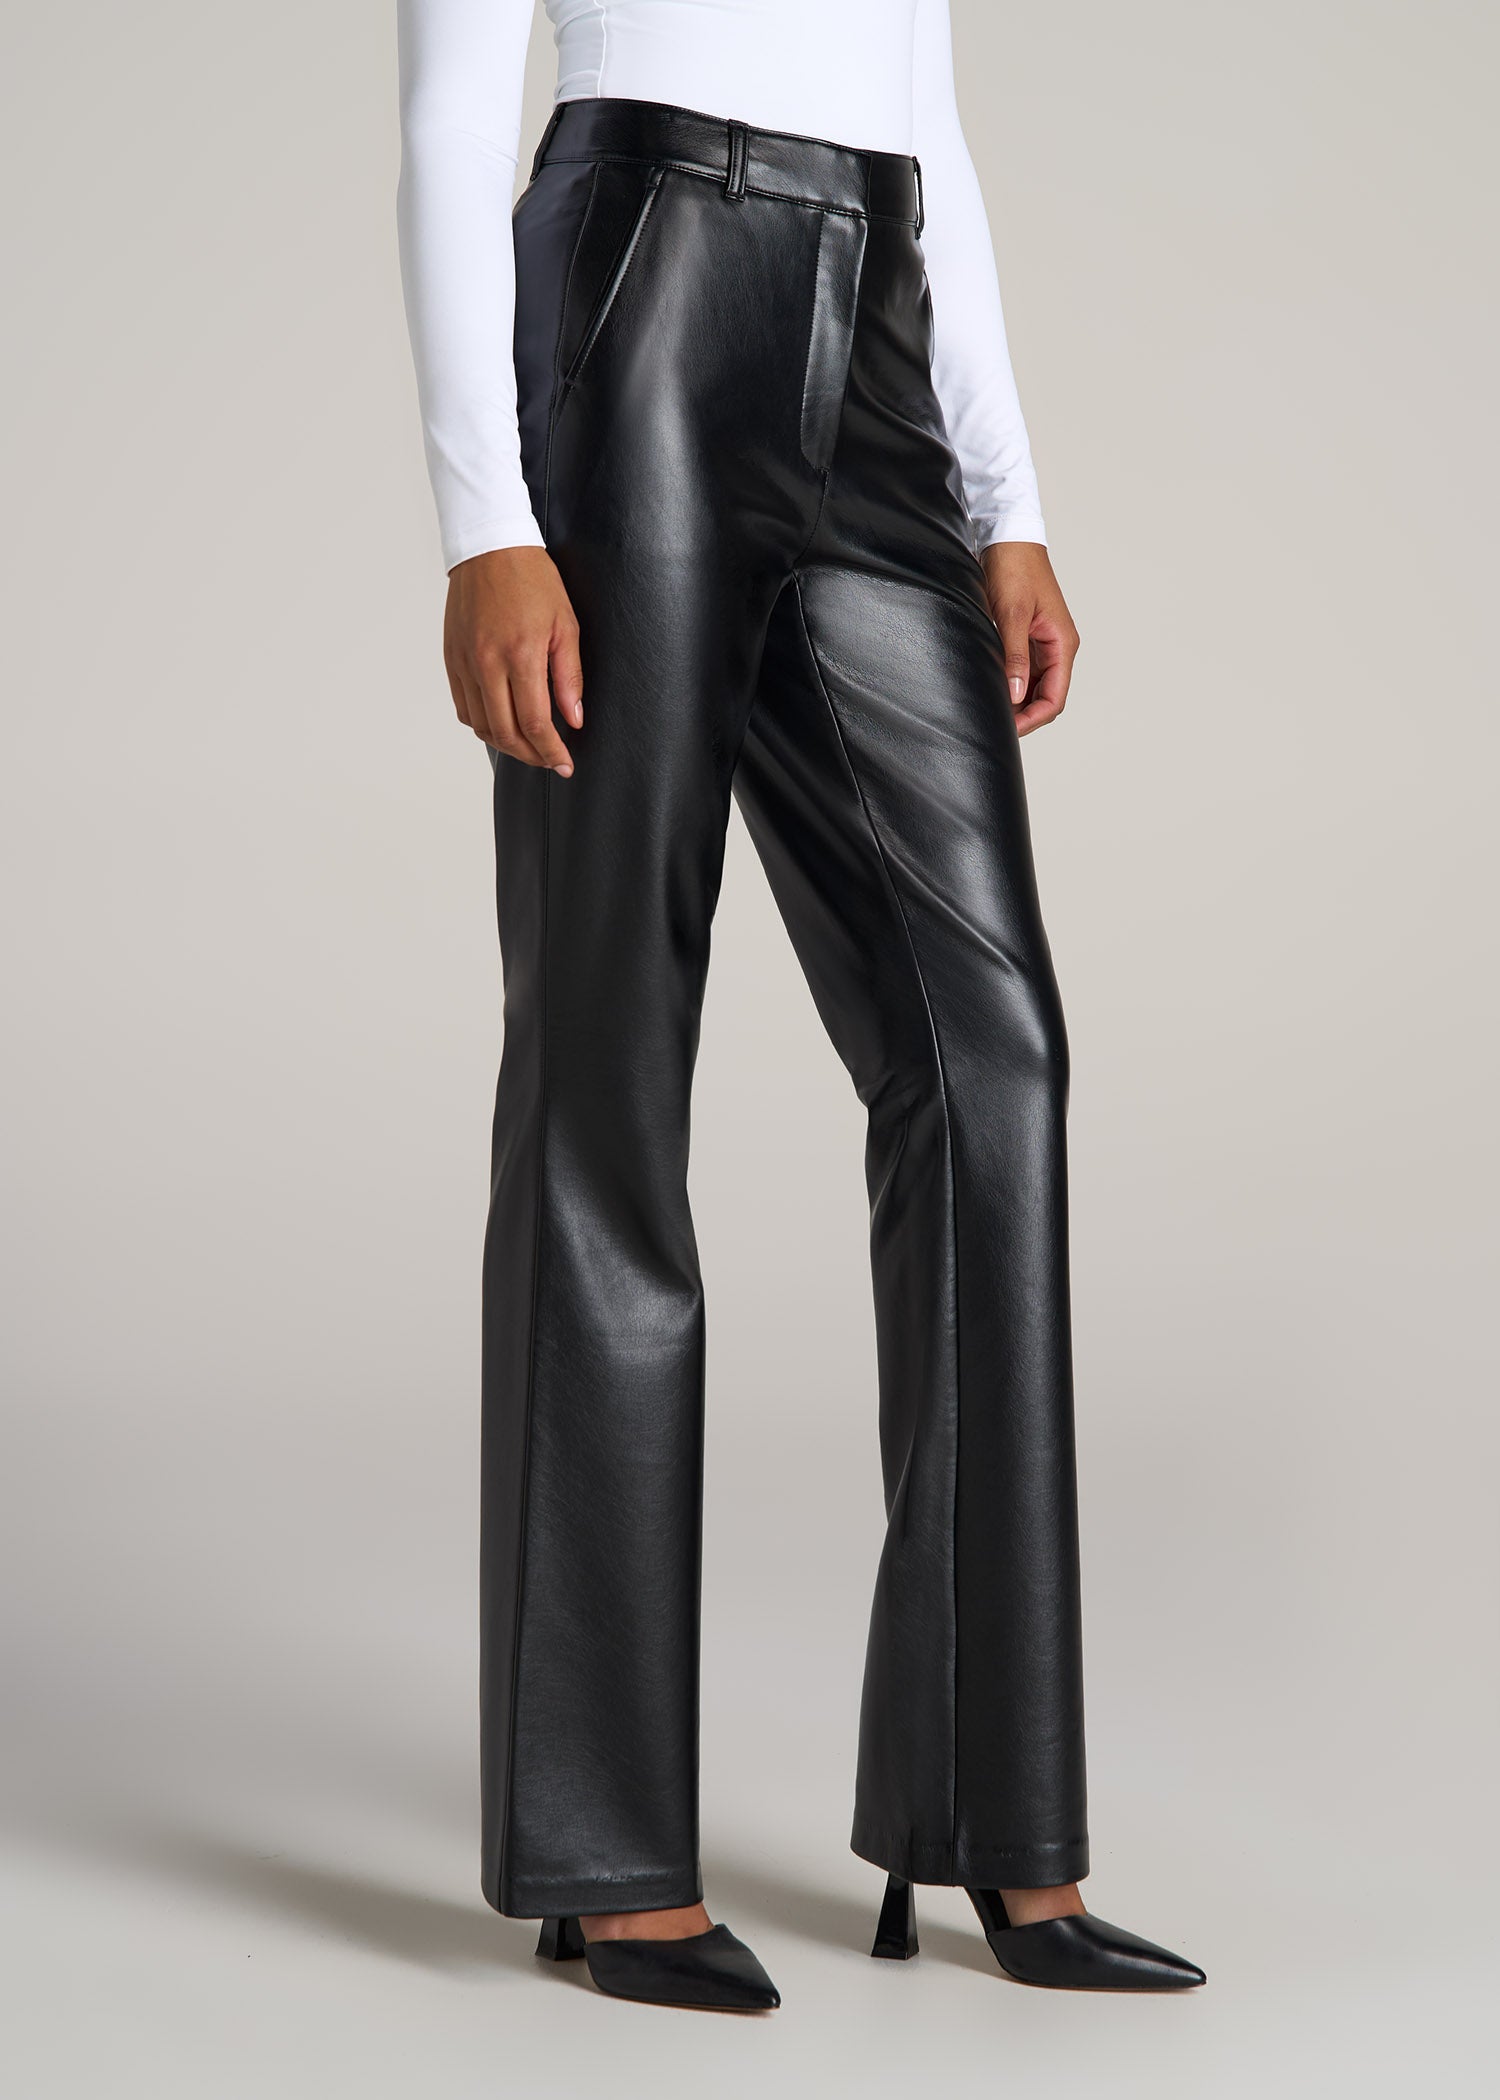 Black Faux Leather Pants High Button Waist Wide Leg